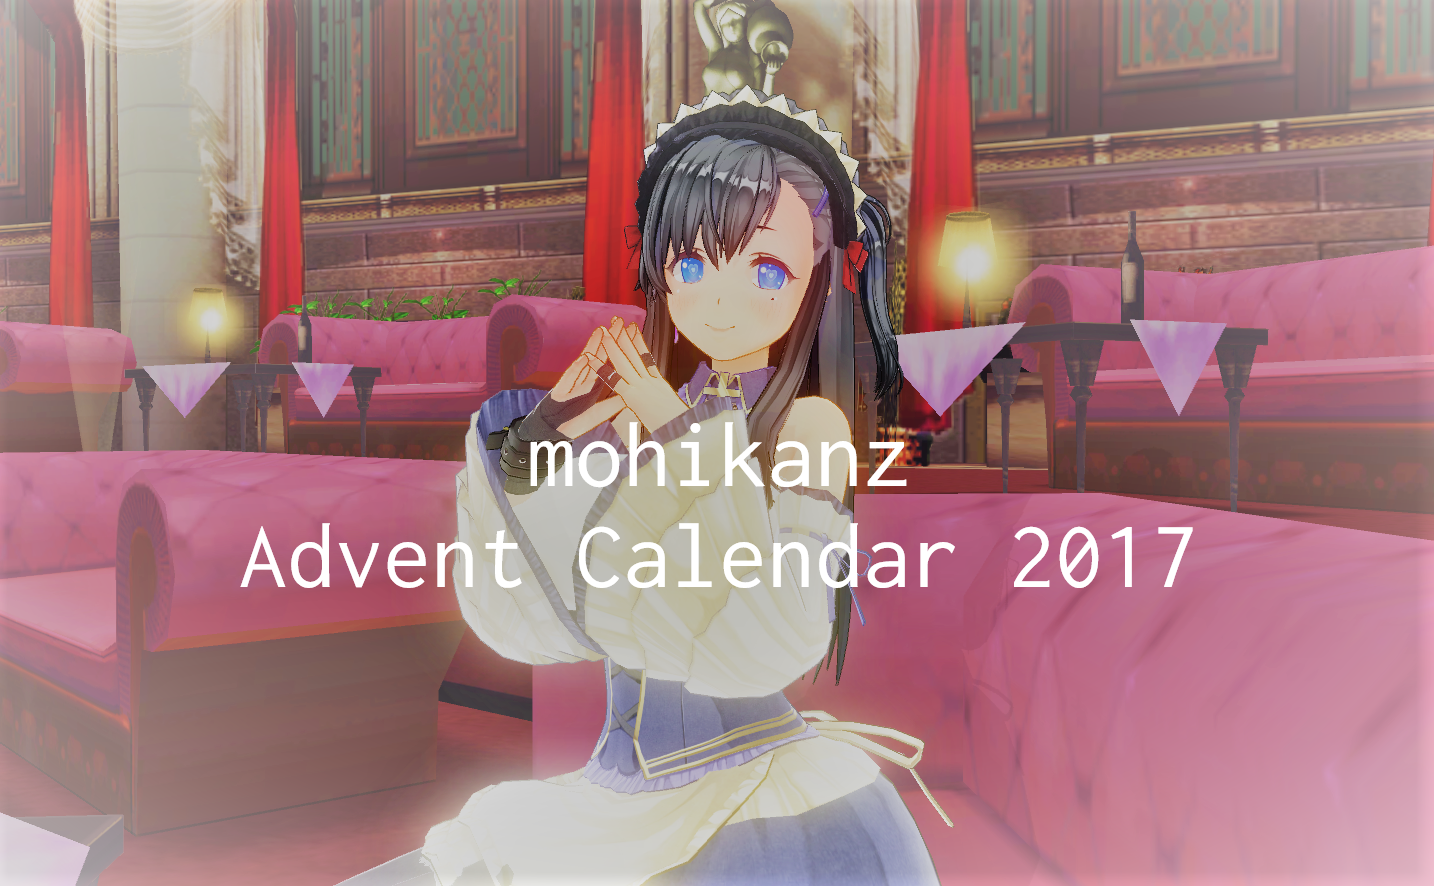 mohikanz-Advent-Calendar-2017